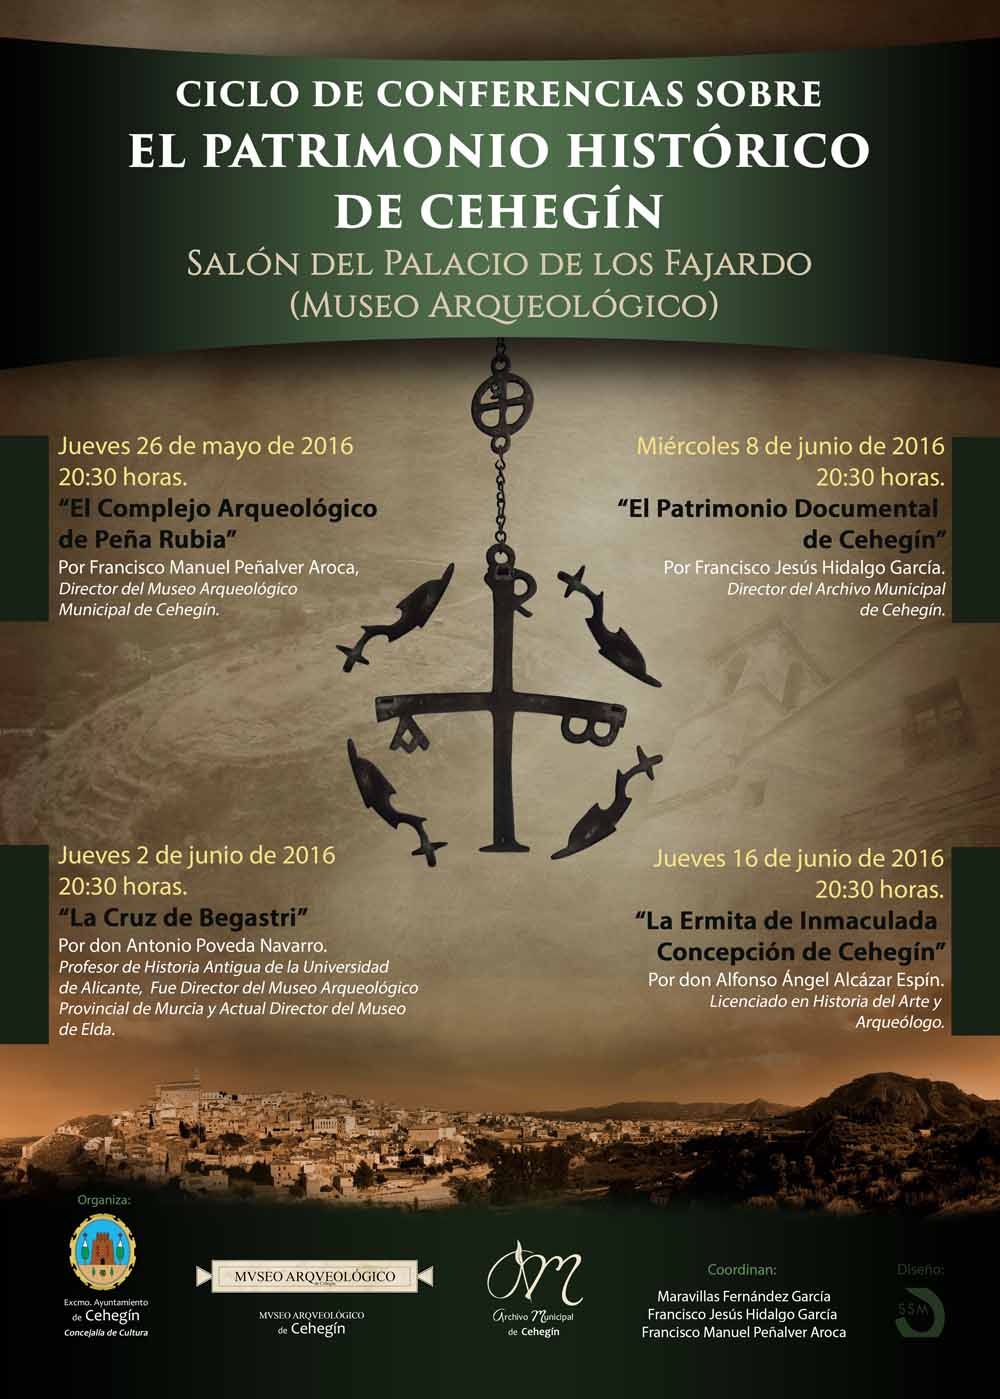 La conferencia de Alfonso Ángel Alcázar Espín, pone el broche final al Ciclo sobre Patrimonio Histórico en Cehegín